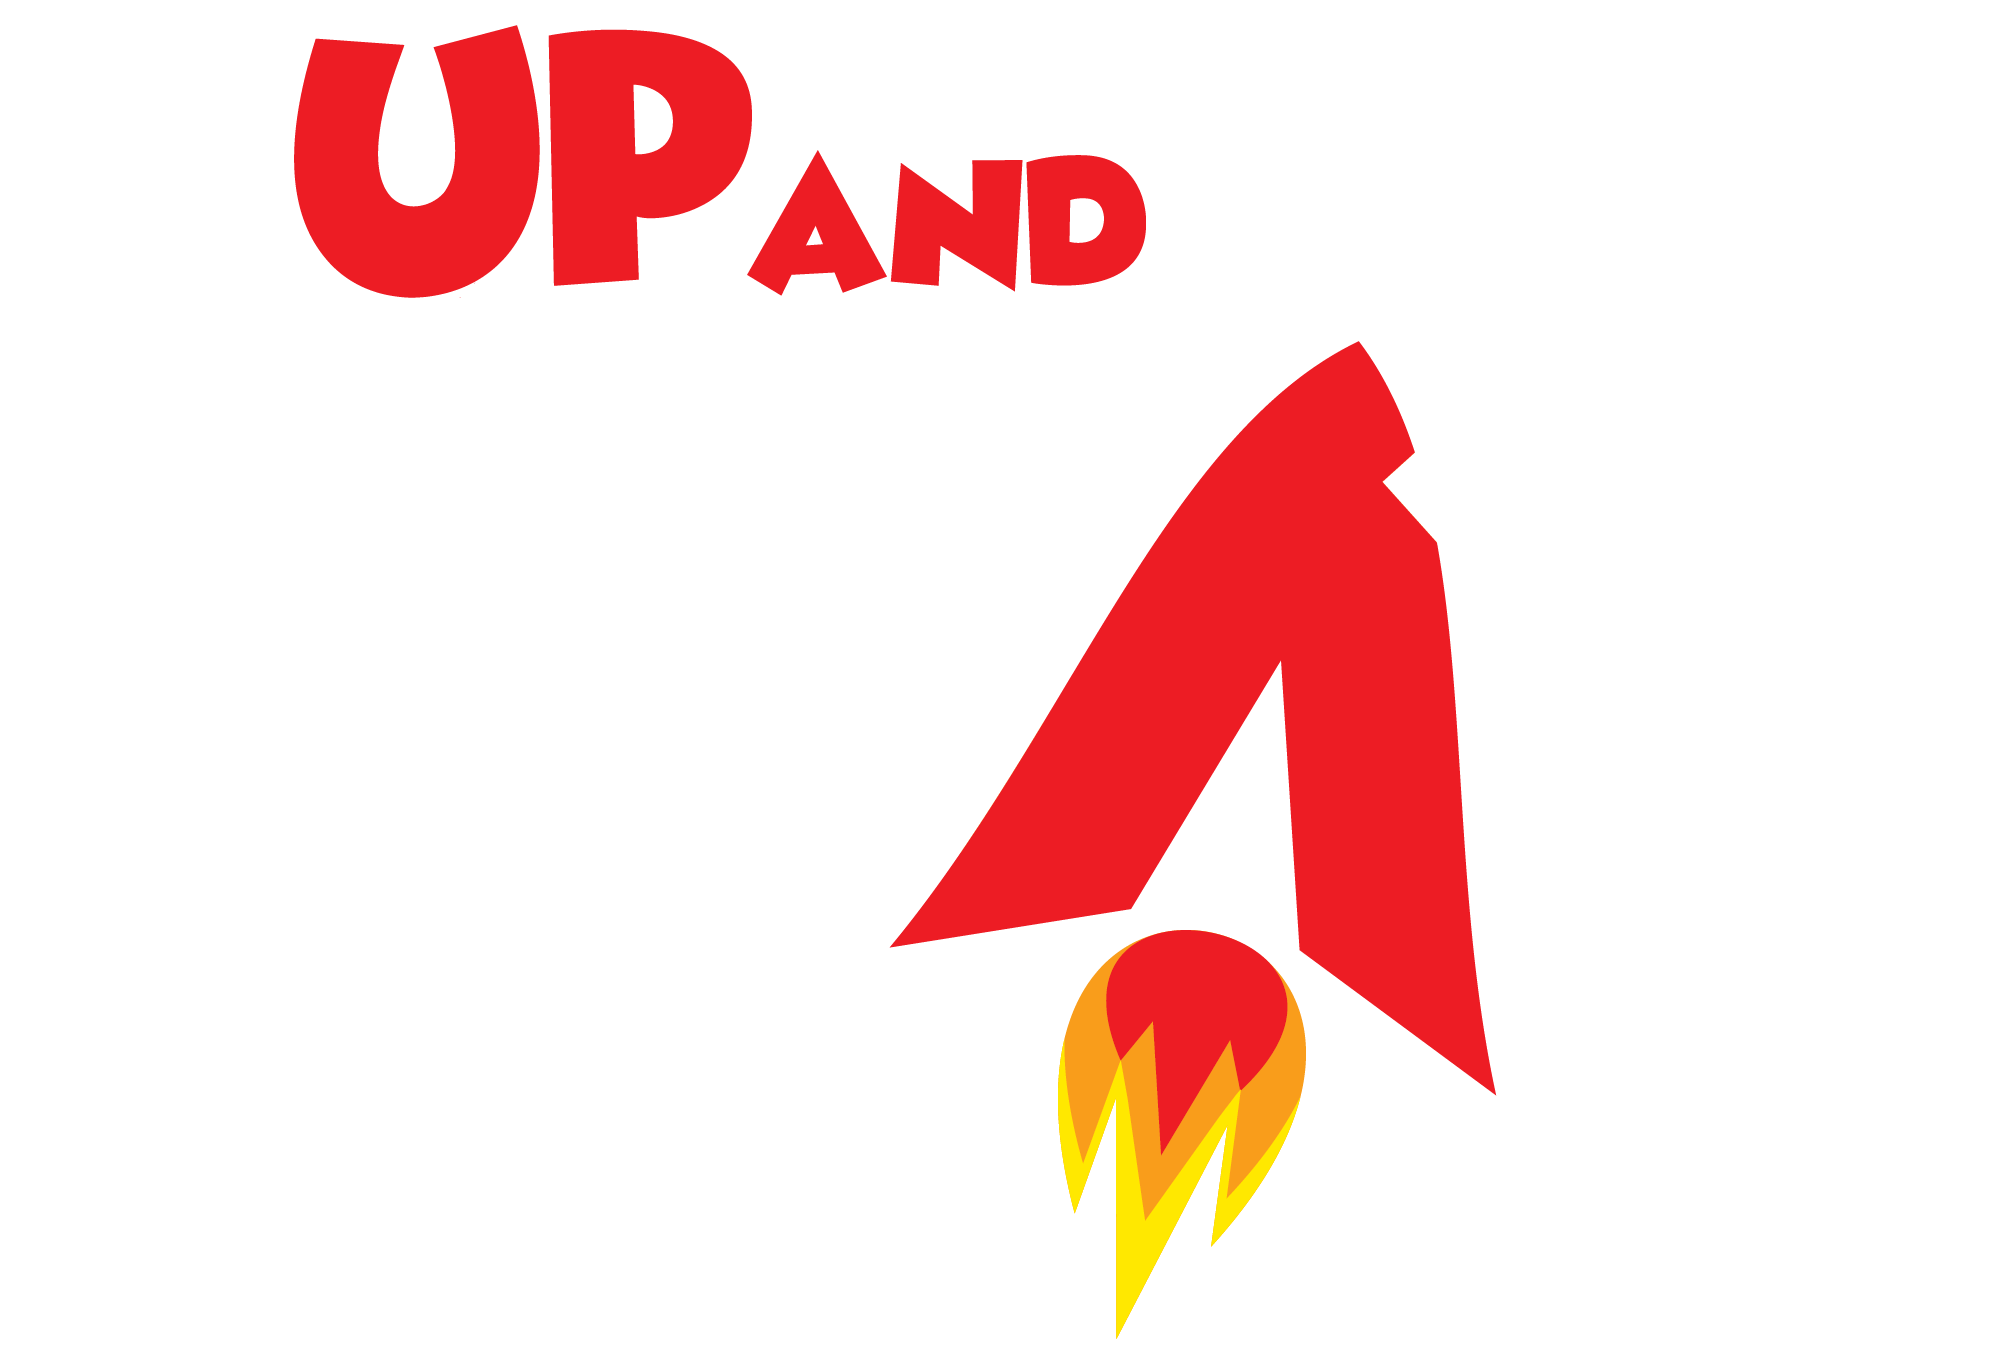 logo_upandaway_final_versaofundoescuro